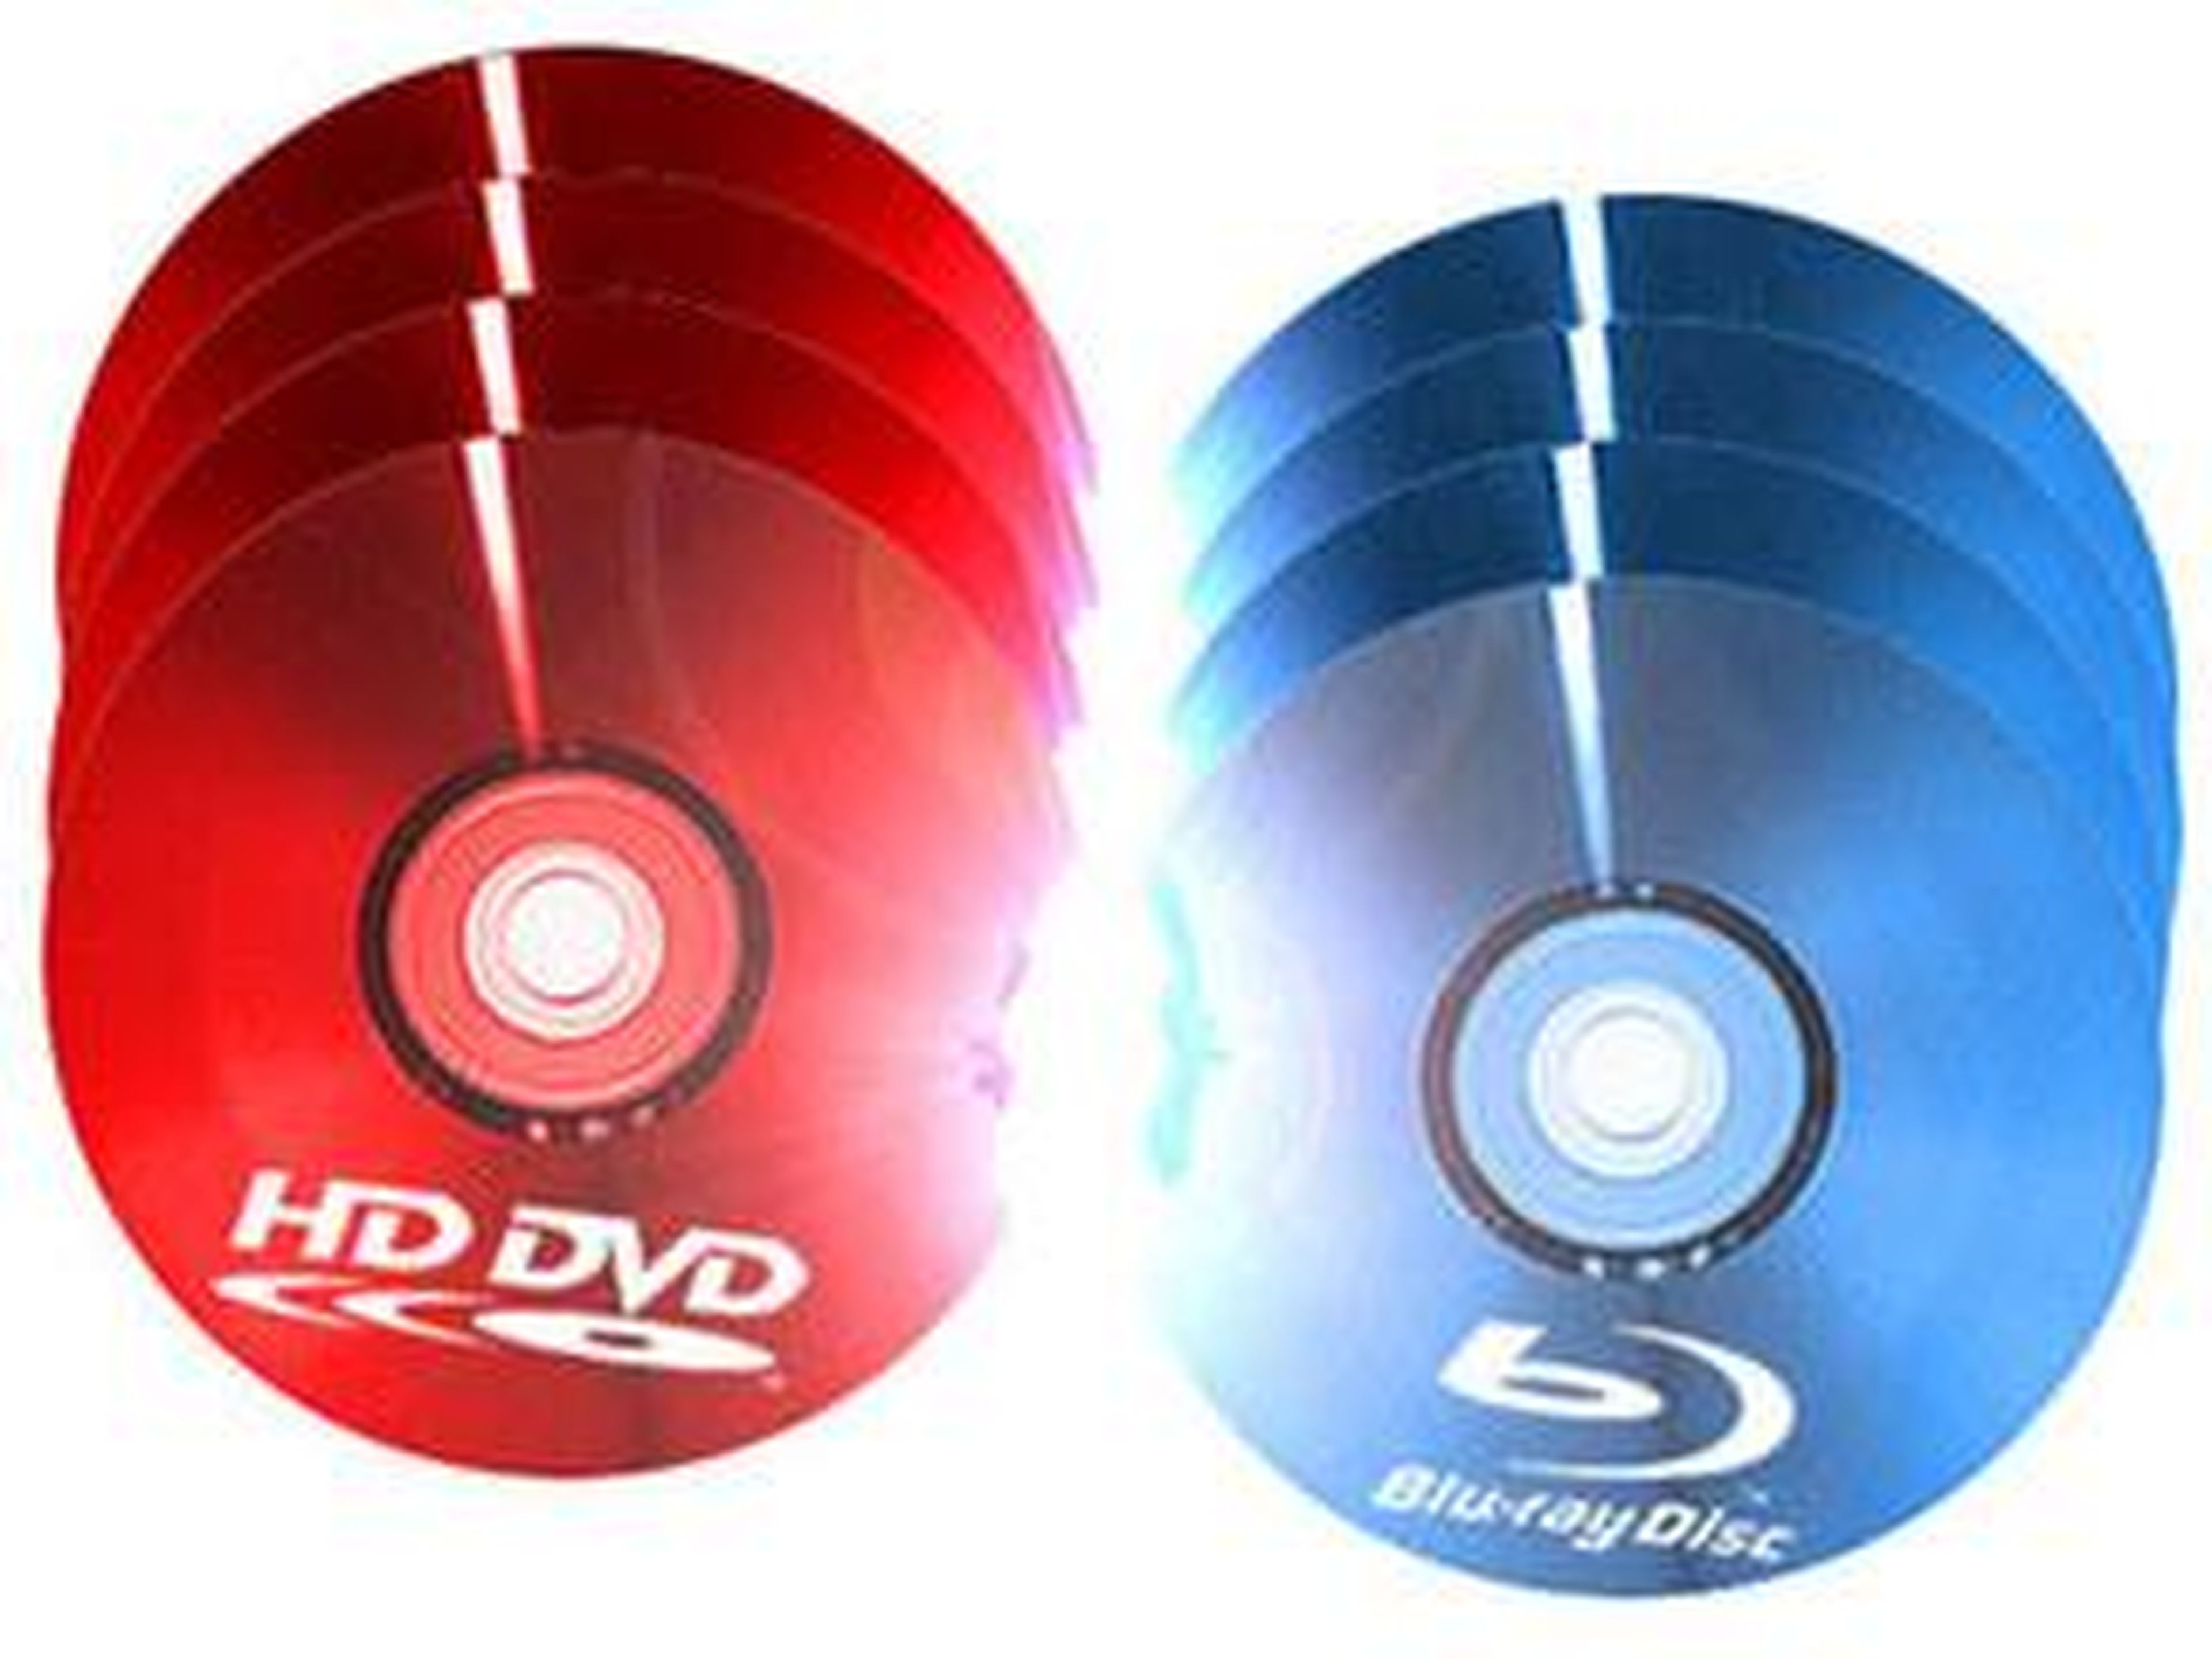 Gráfico: Los DVD y Blu-ray están pasando rápidamente de moda